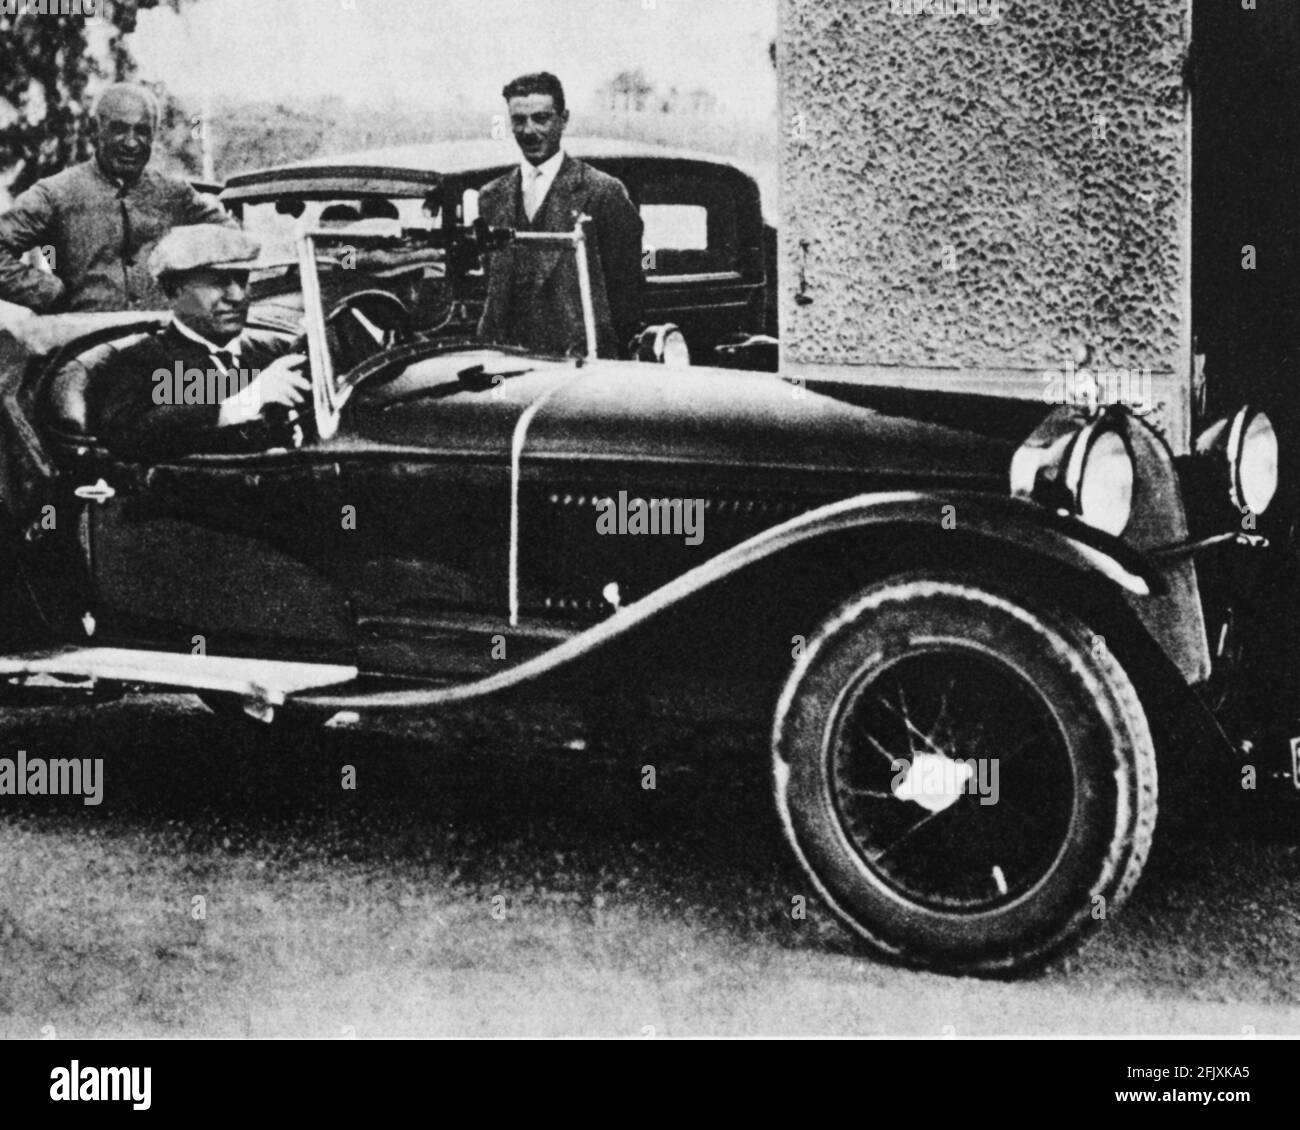 1928 ca., ITALIA : IL dittatore fascista italiano BENITO MUSSOLINI riceve  un'auto come regalo dagli operai DELL'ALFA ROMEO - seconda guerra mondiale  - seconda guerra mondiale - seconda guerra mondiale - SECONDA